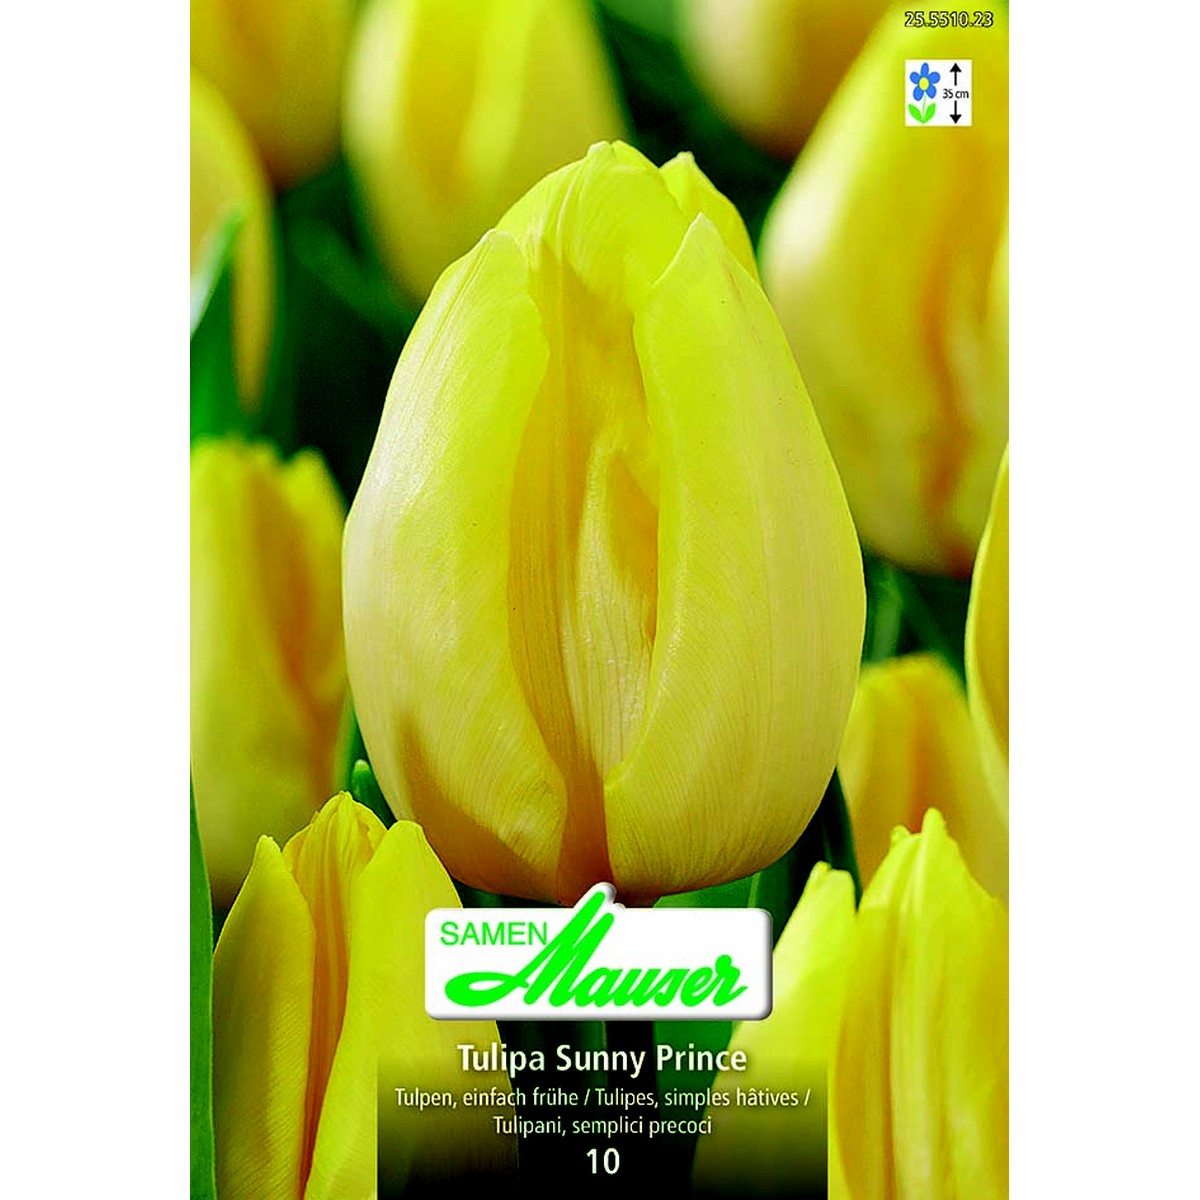   Tulipe TSH Sunny Price 10  12/